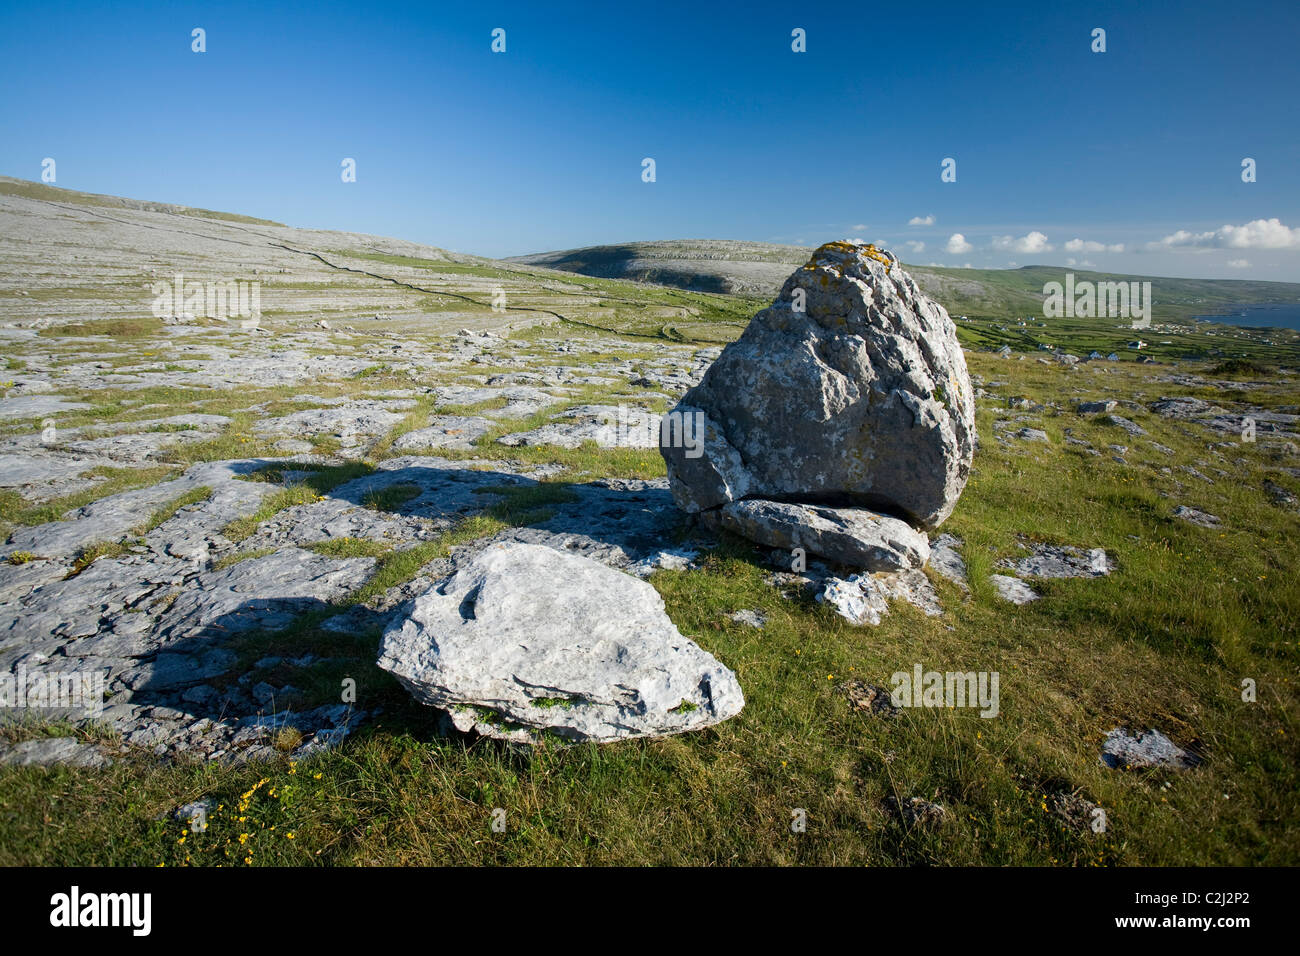 Pavimentazione di pietra calcarea e glaciale massi erratici in The Burren, County Clare, Irlanda. Foto Stock